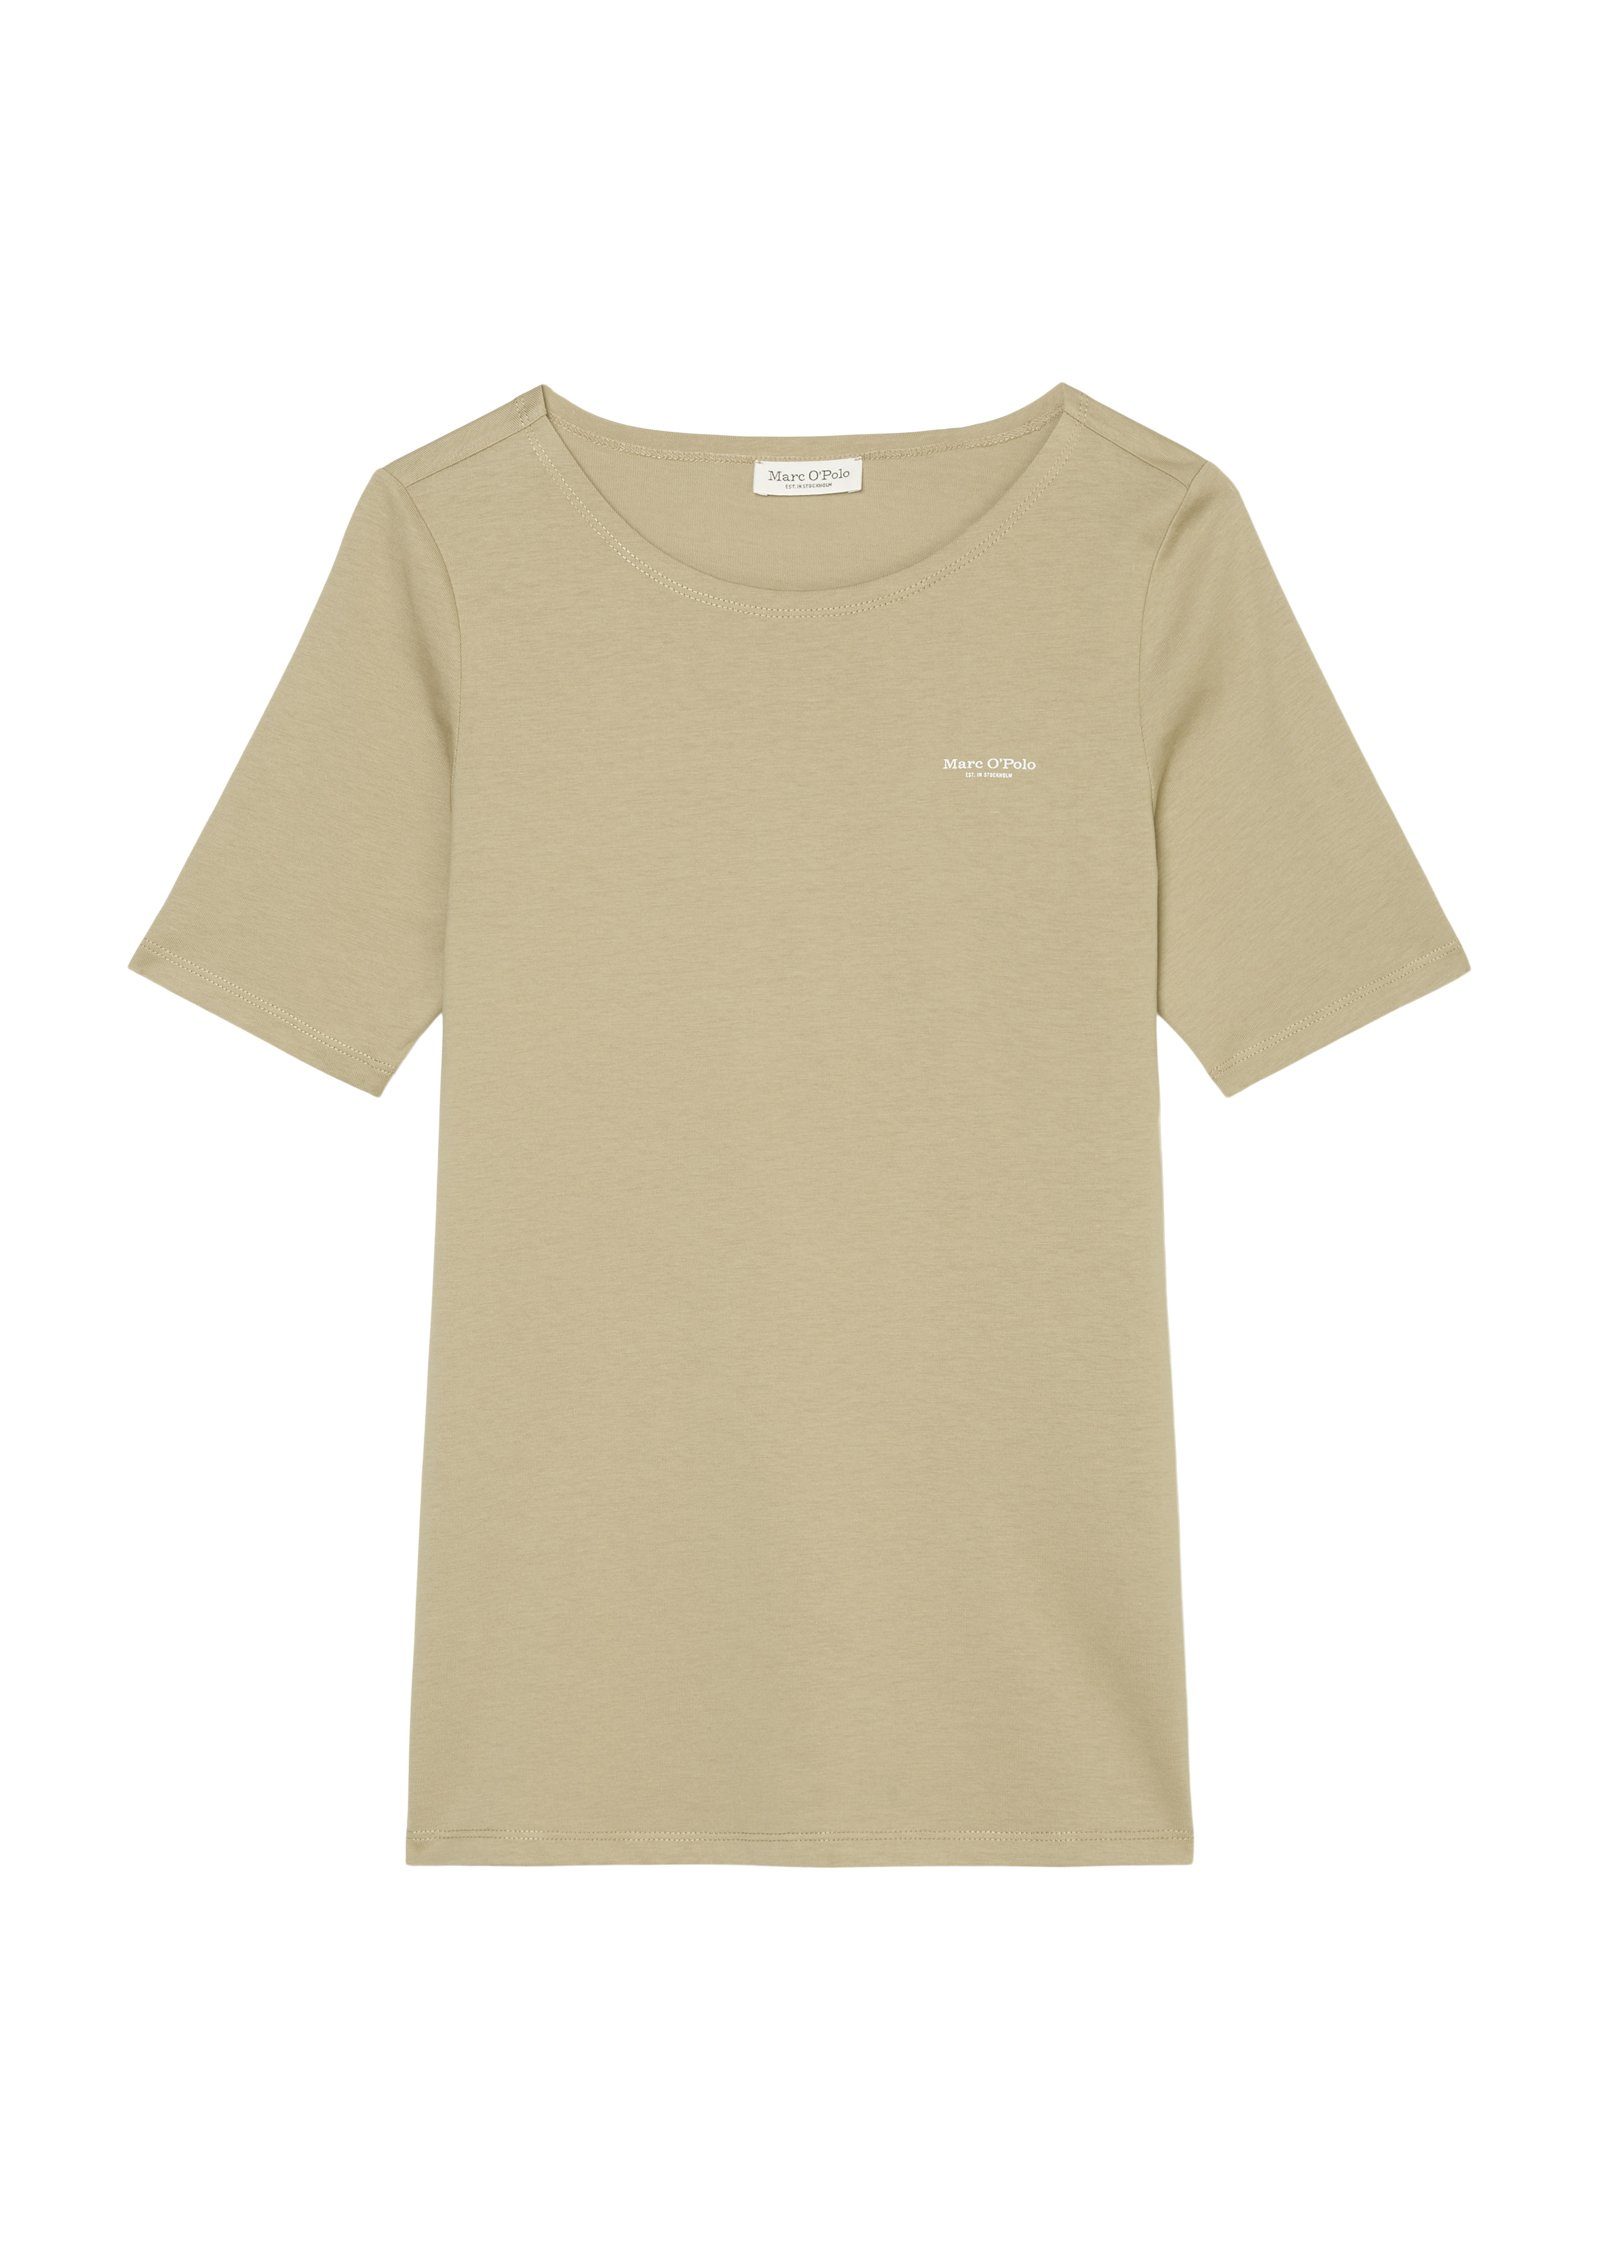 Logo O'Polo Marc sand mit neck, auf round short-sleeve, T-Shirt der T-shirt, kleinem nordic Brust logo-print